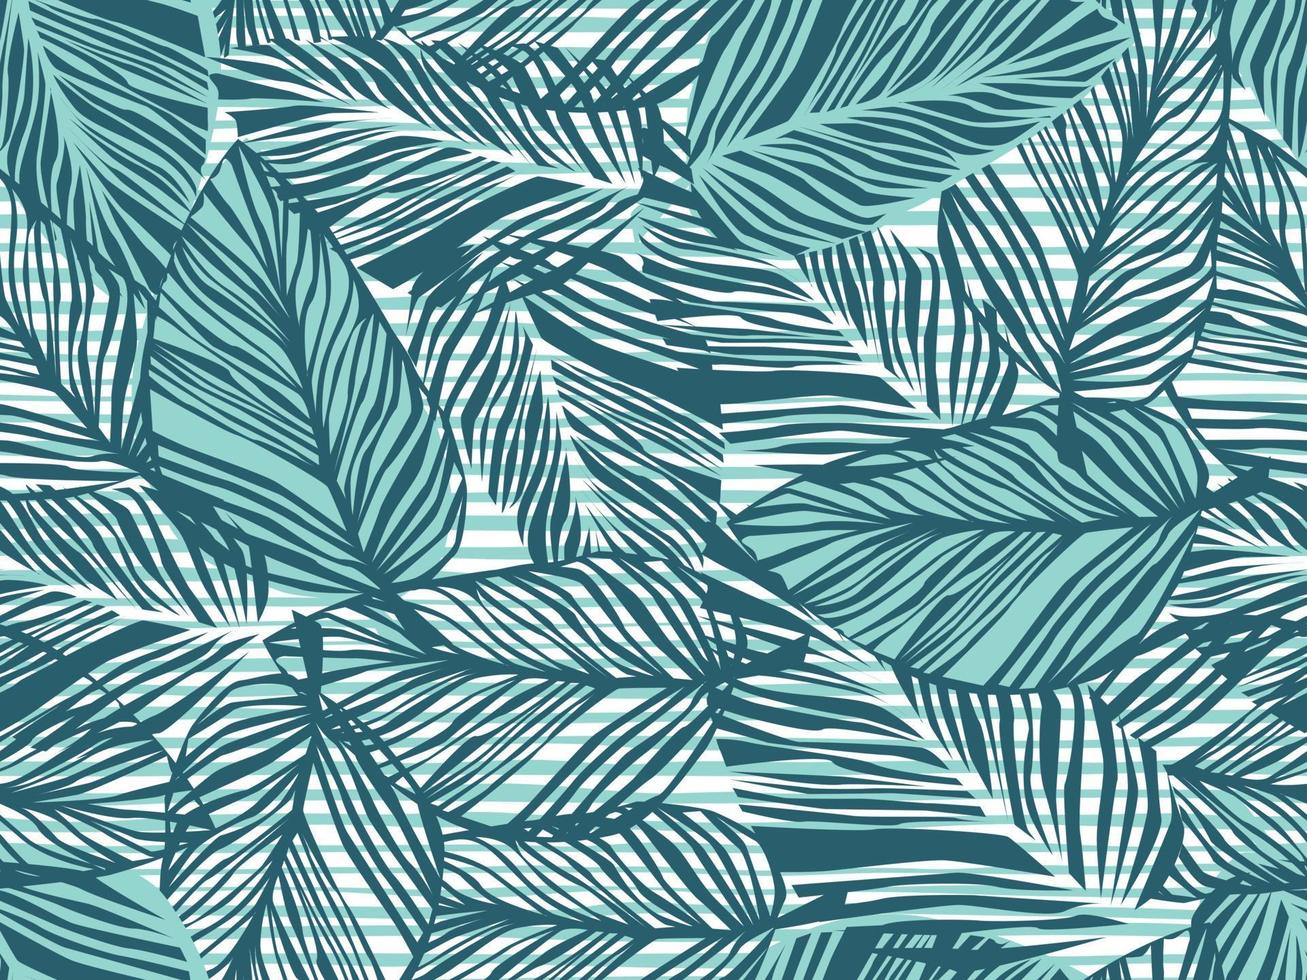 tropisches muster, palmblätter nahtloser vektor floraler hintergrund. exotische pflanze auf streifendruckillustration. Sommer-Natur-Dschungel-Druck. Blätter der Palme auf Farblinien.